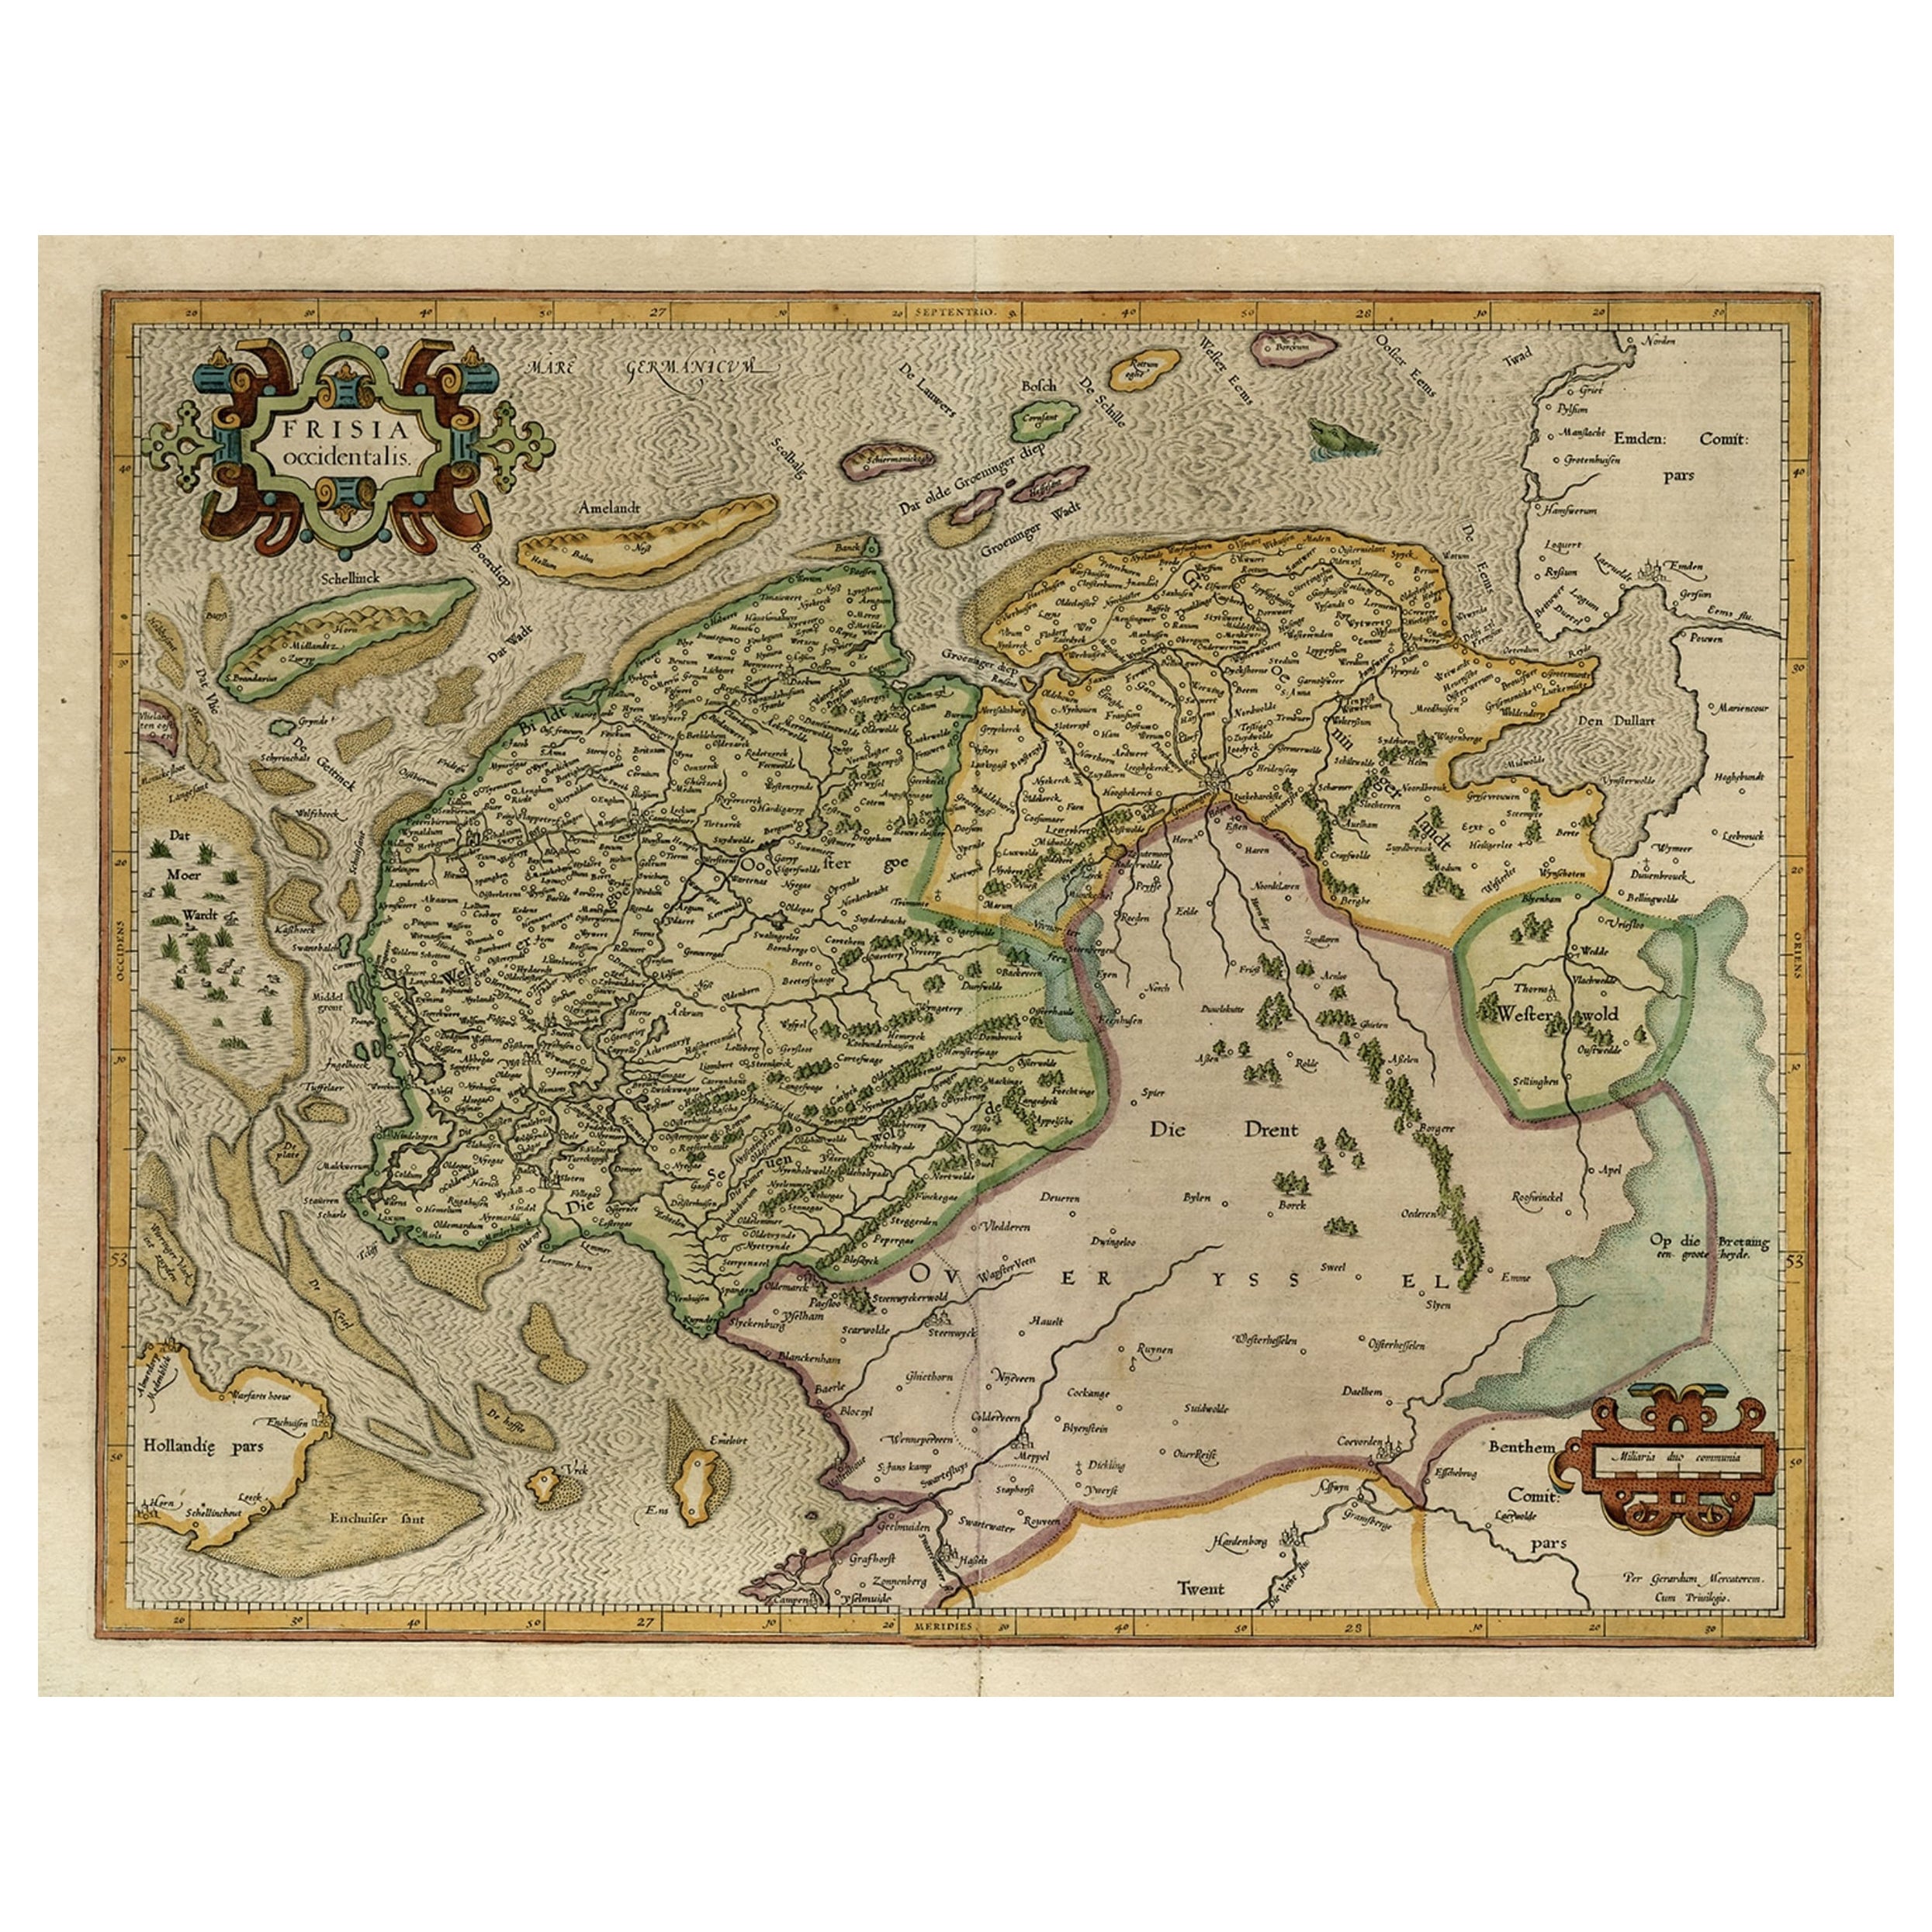 Ancienne carte des provinces néerlandaises du Friesland et de Groningen, Pays-Bas, 1604